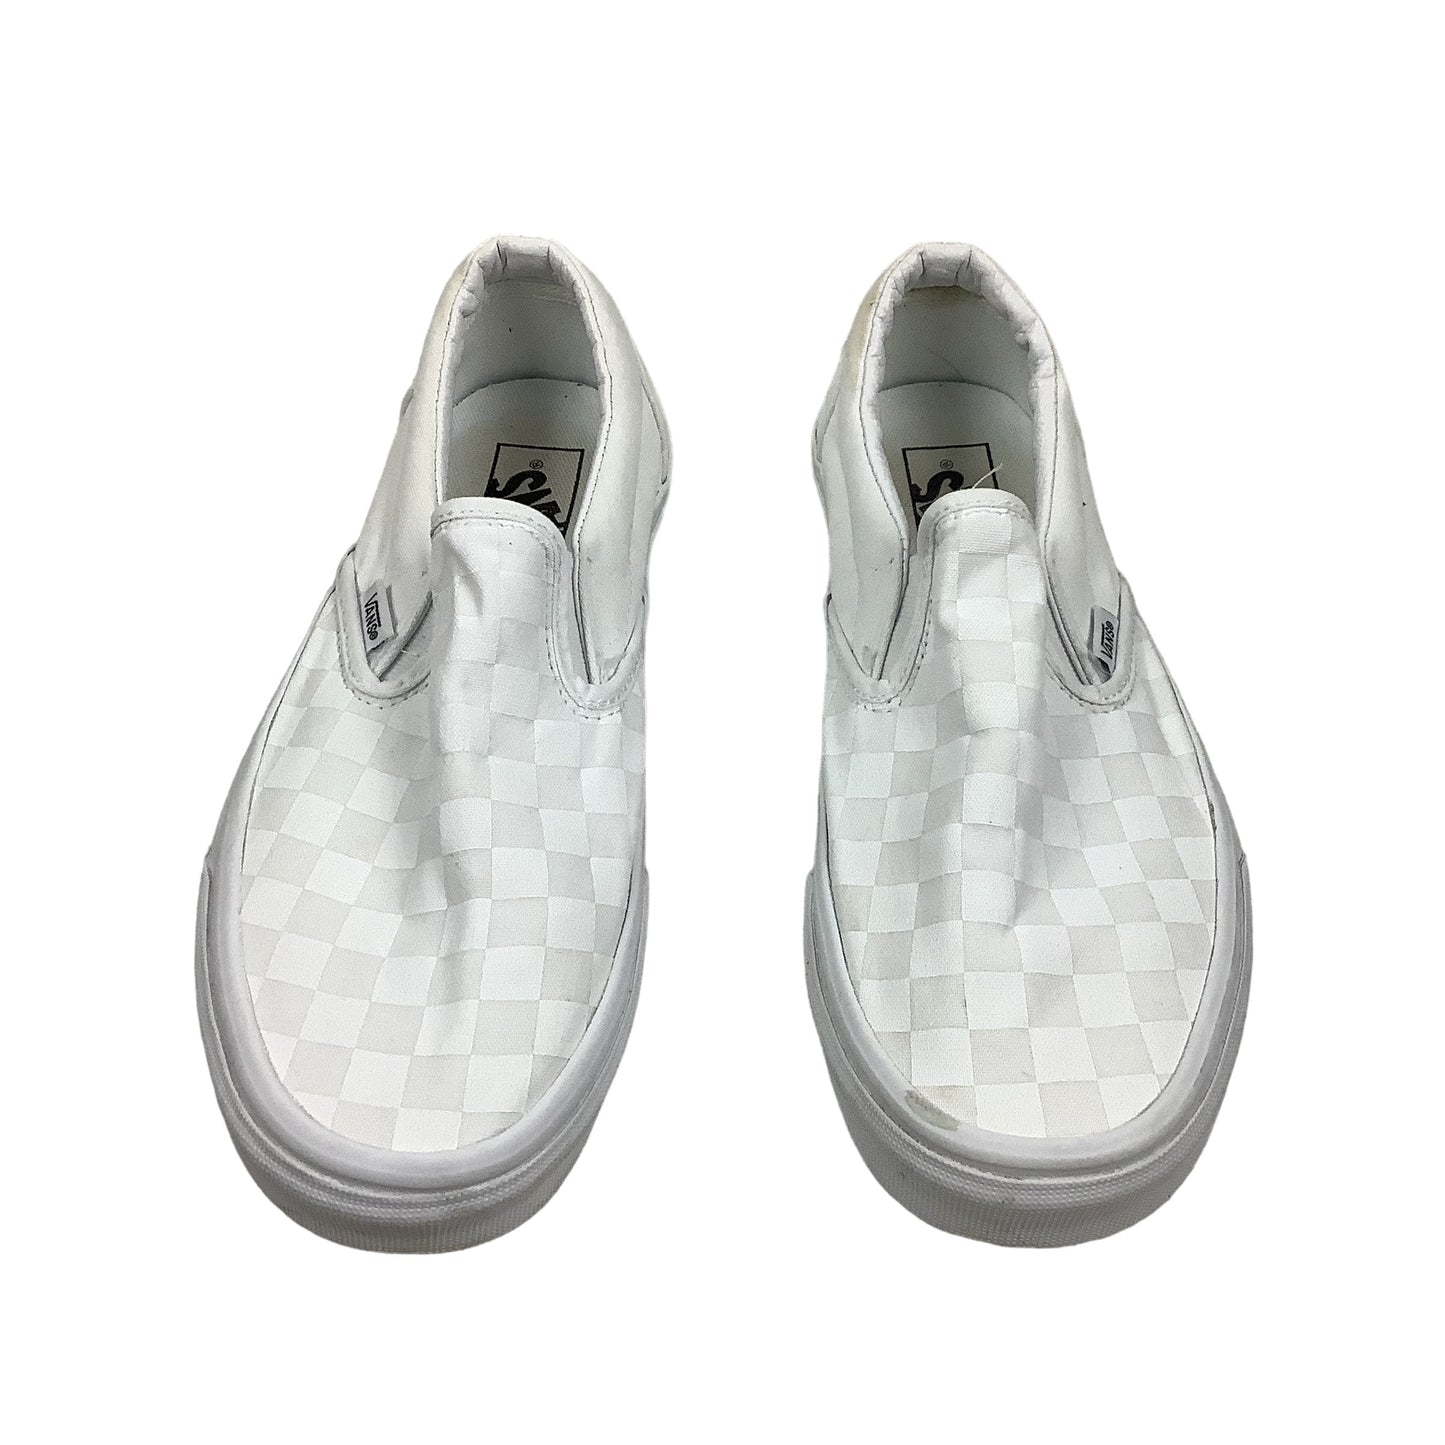 White Shoes Flats Vans, Size 9.5